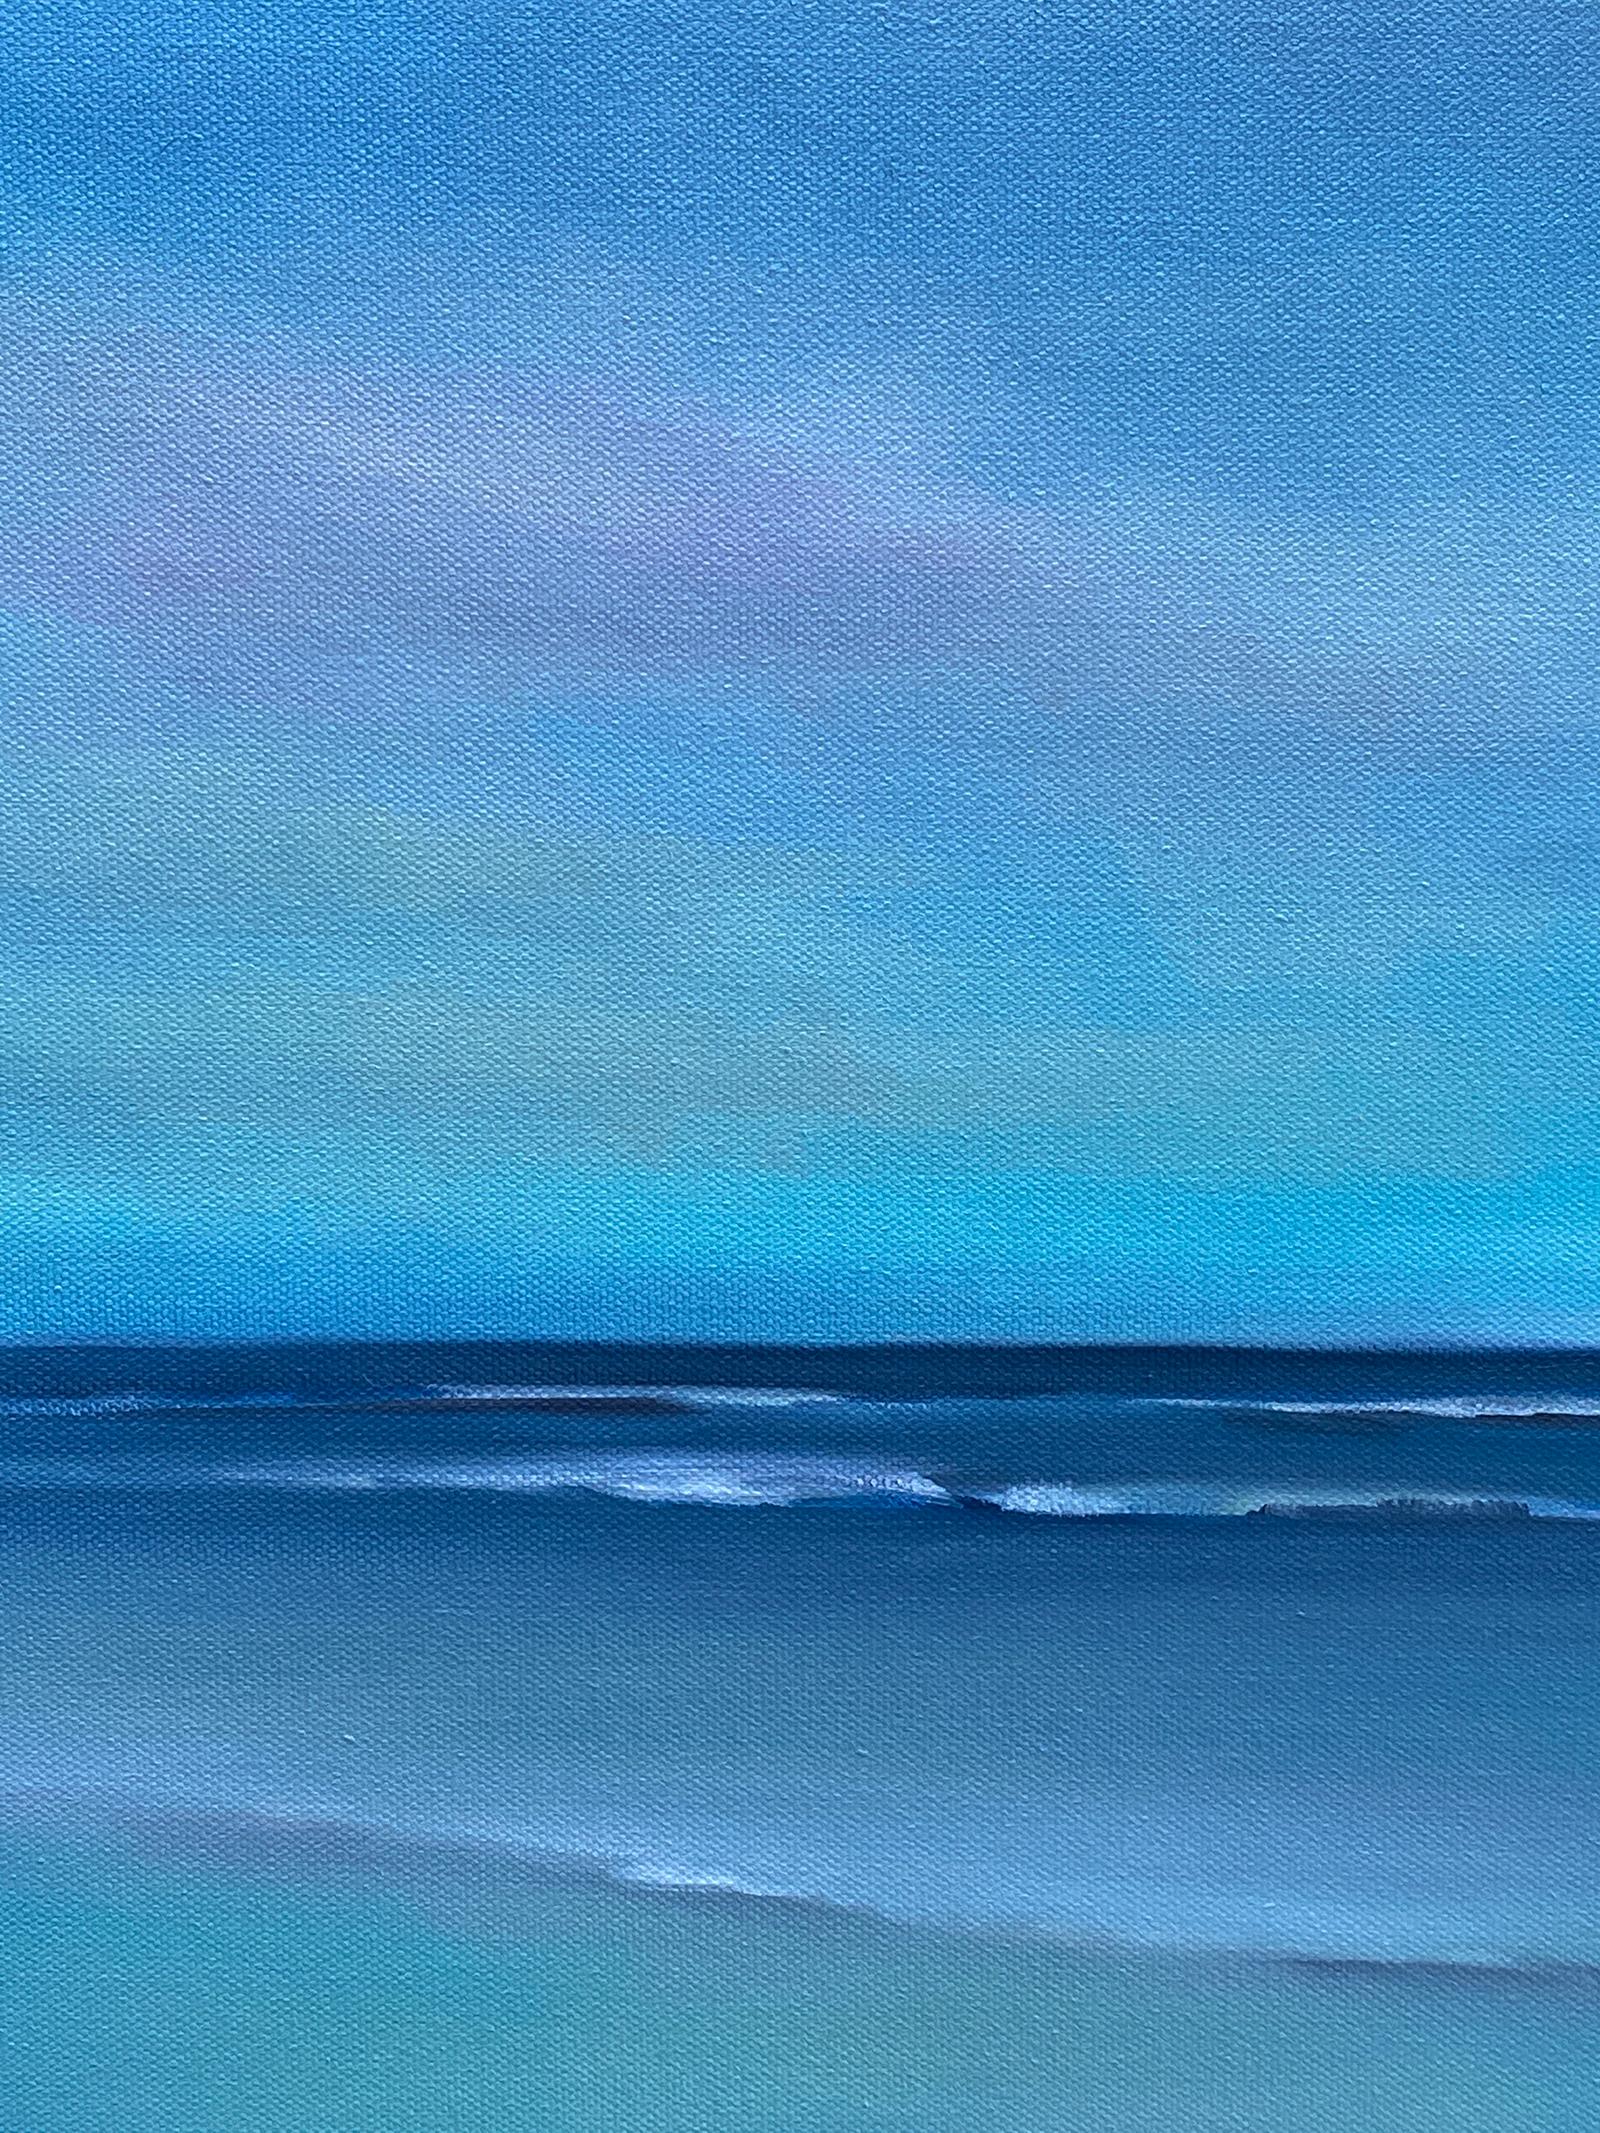 Blue Ocean Clouds, Oil Painting - American Realist Art by Nancy Hughes Miller